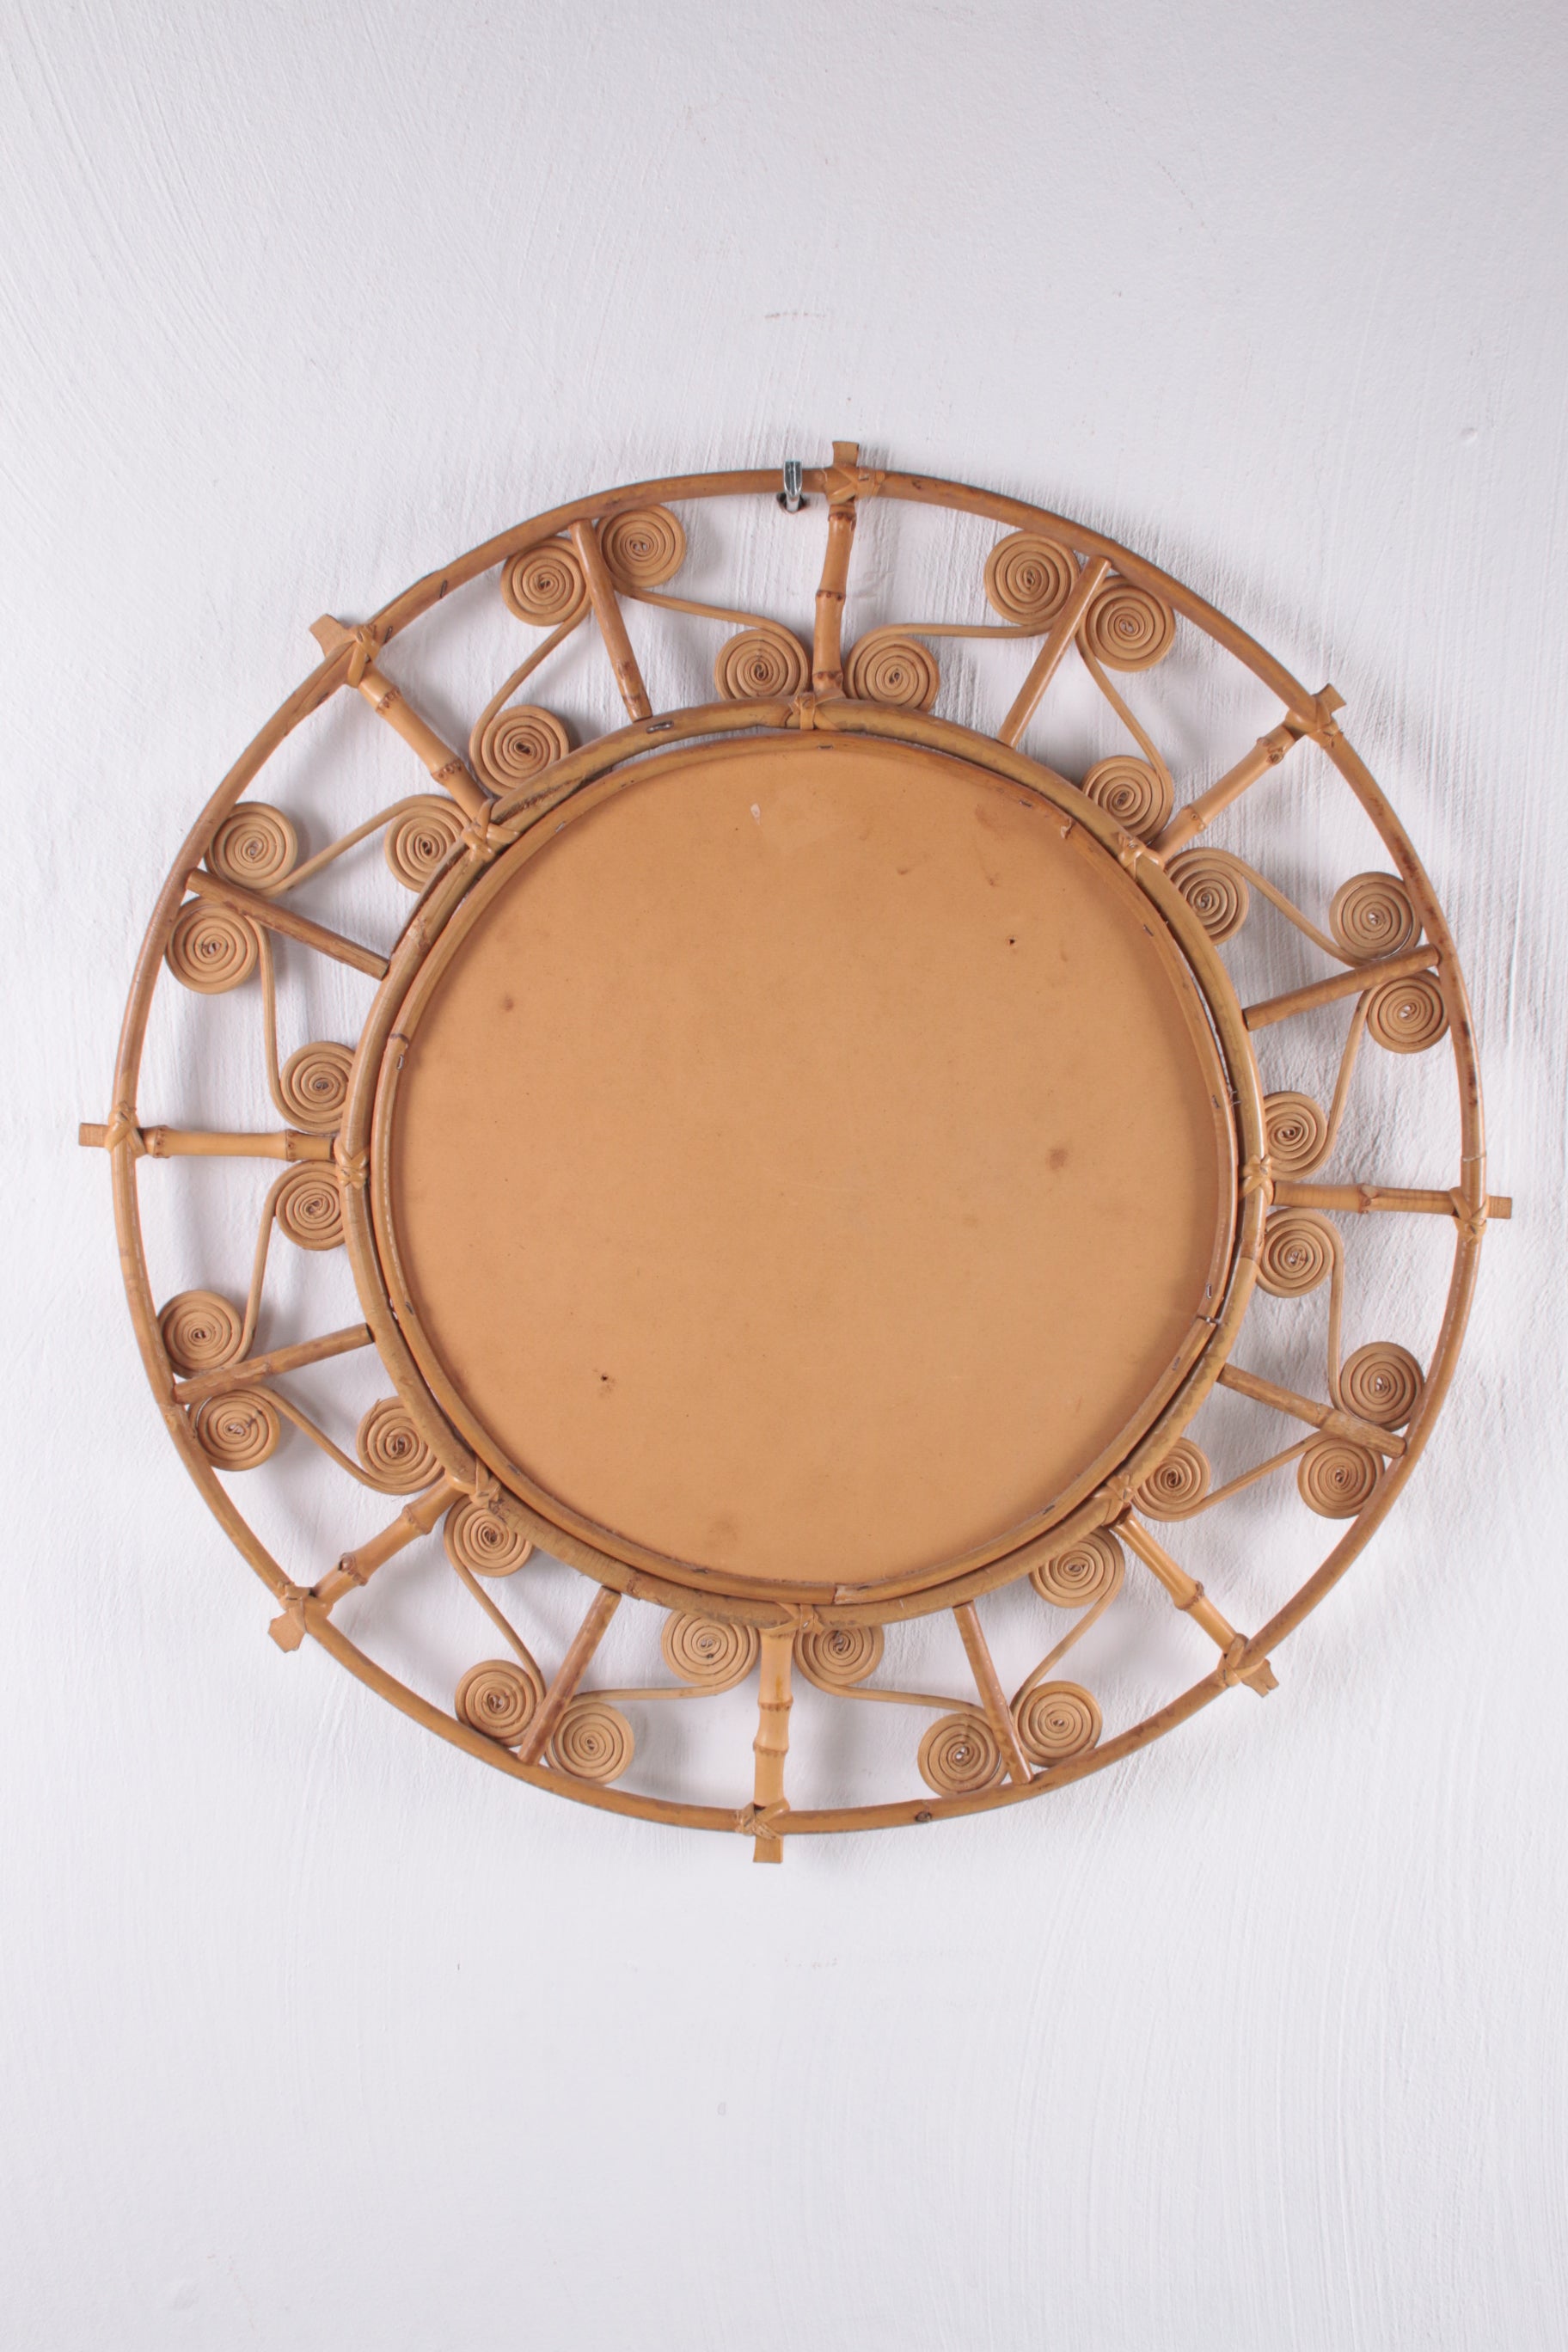 Grote ronde rotan spiegel met filigrane pauwlijst, Spanje jaren 60 achterkant